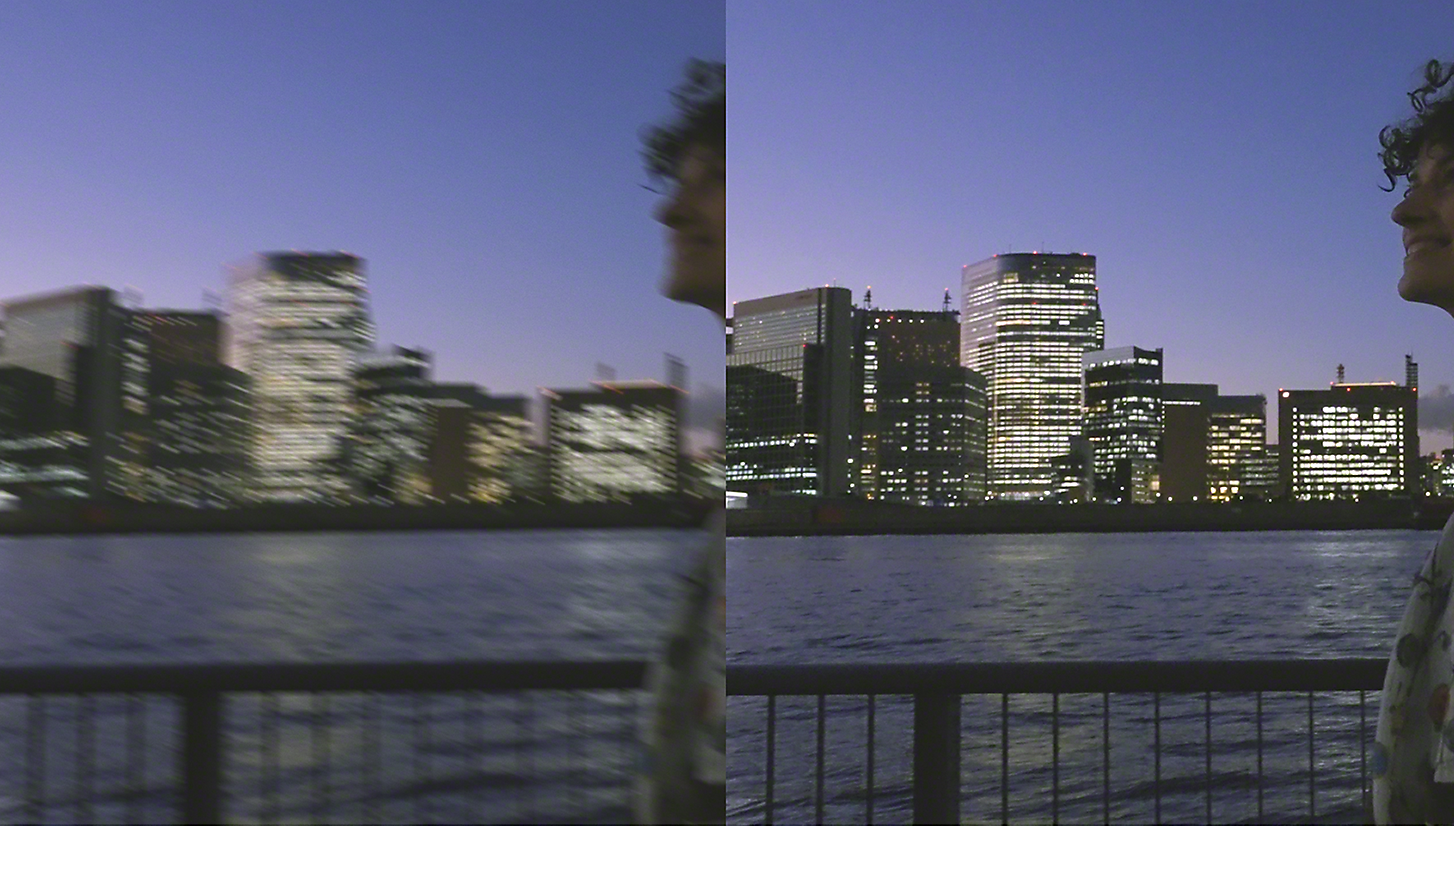 Image double d'un paysage urbain de nuit, l'image de gauche est floue, celle de droite est nette et détaillée